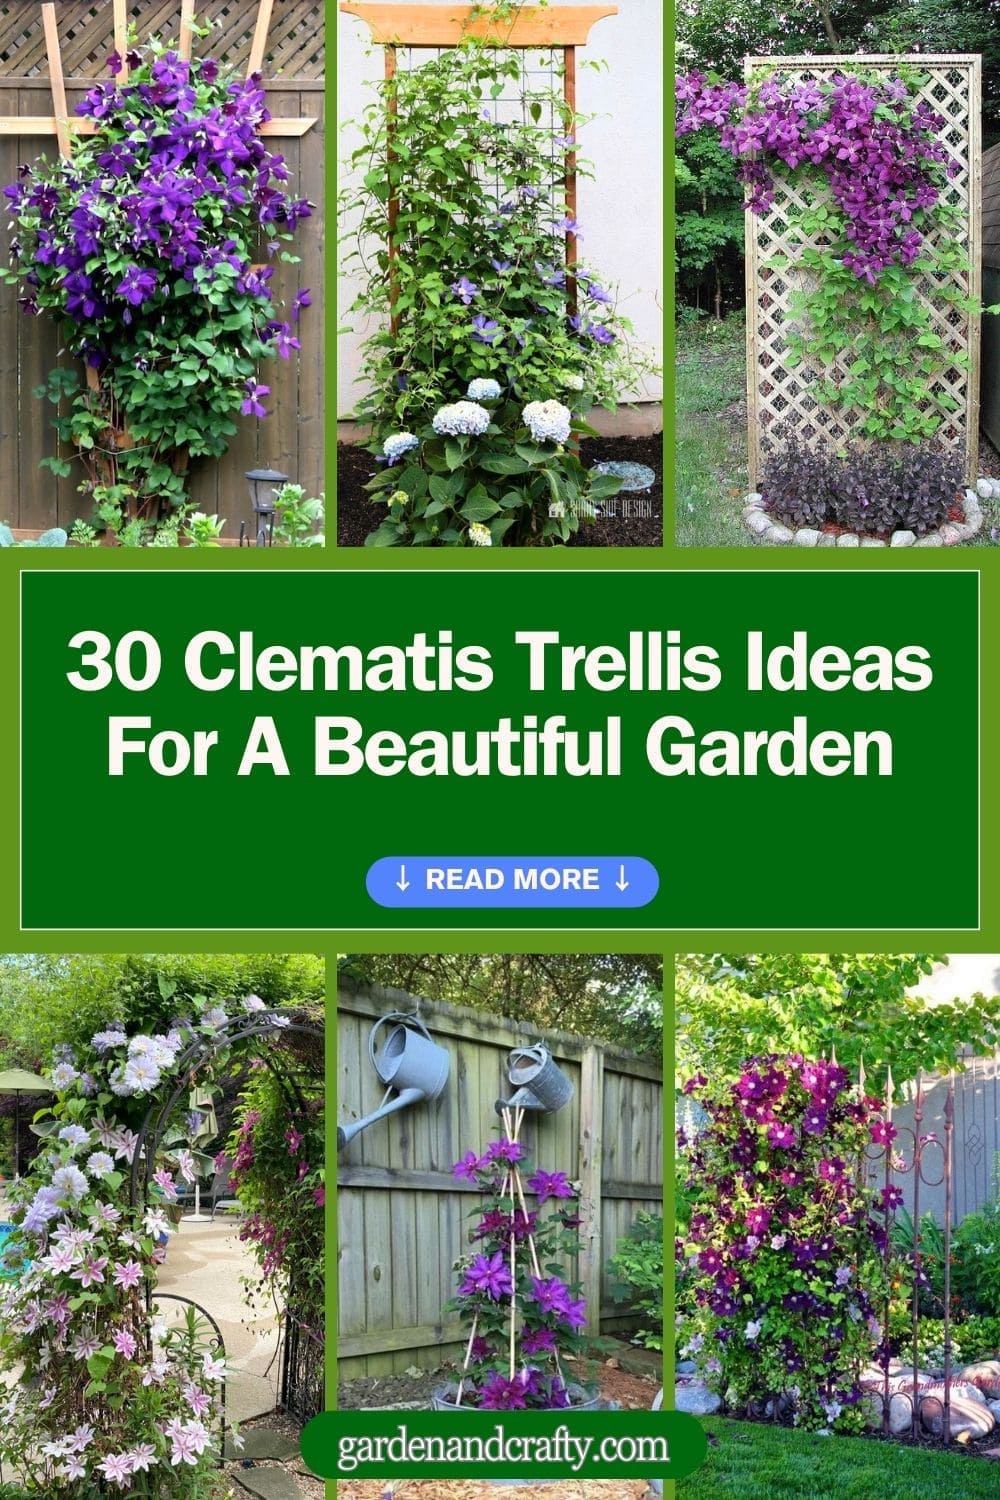 Top 30 Best Clematis Trellis Ideas for A Beautiful Garden